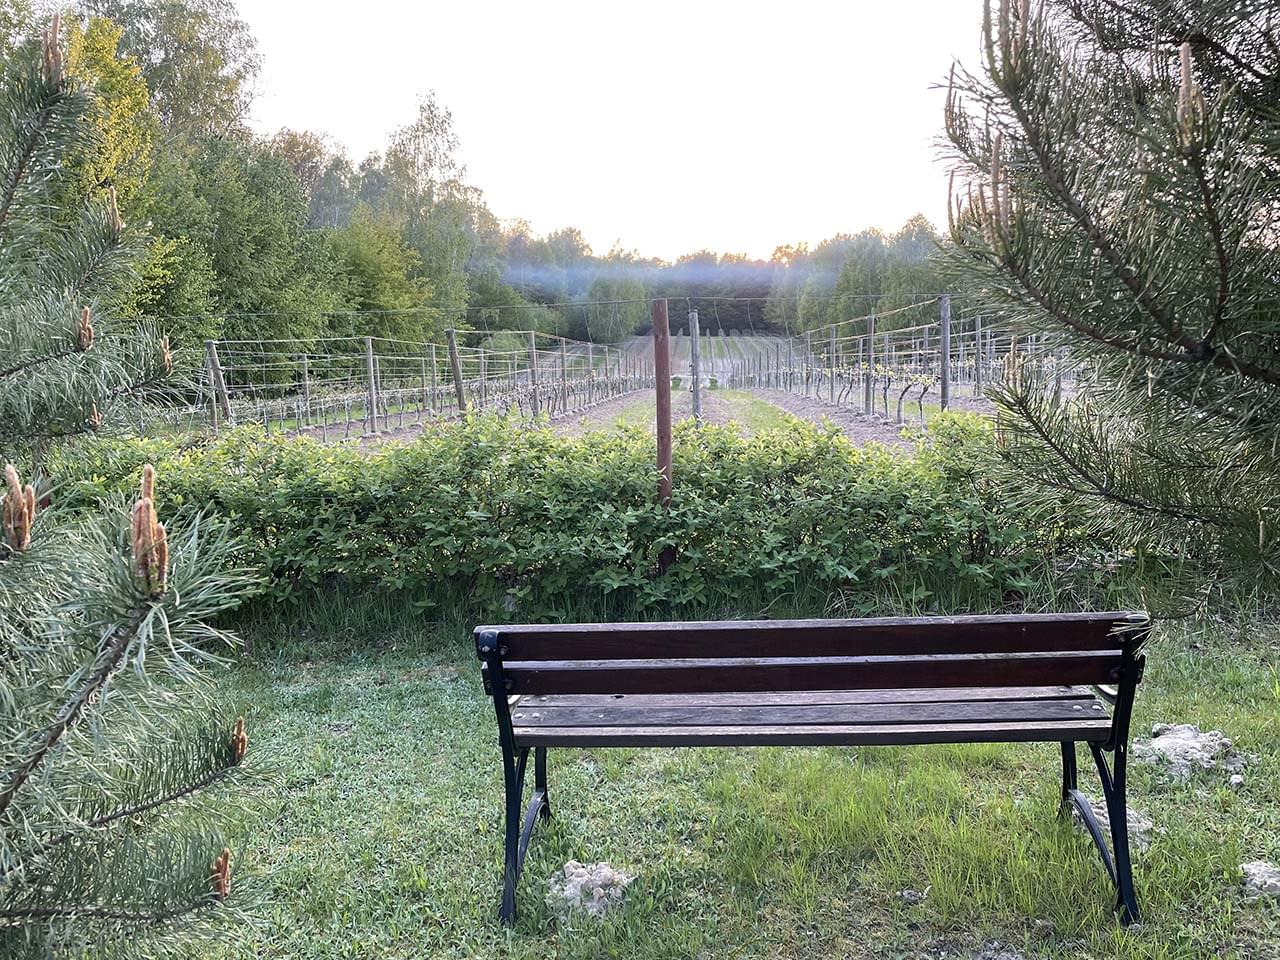 ławka przed polem z małymi krzewami winorośli